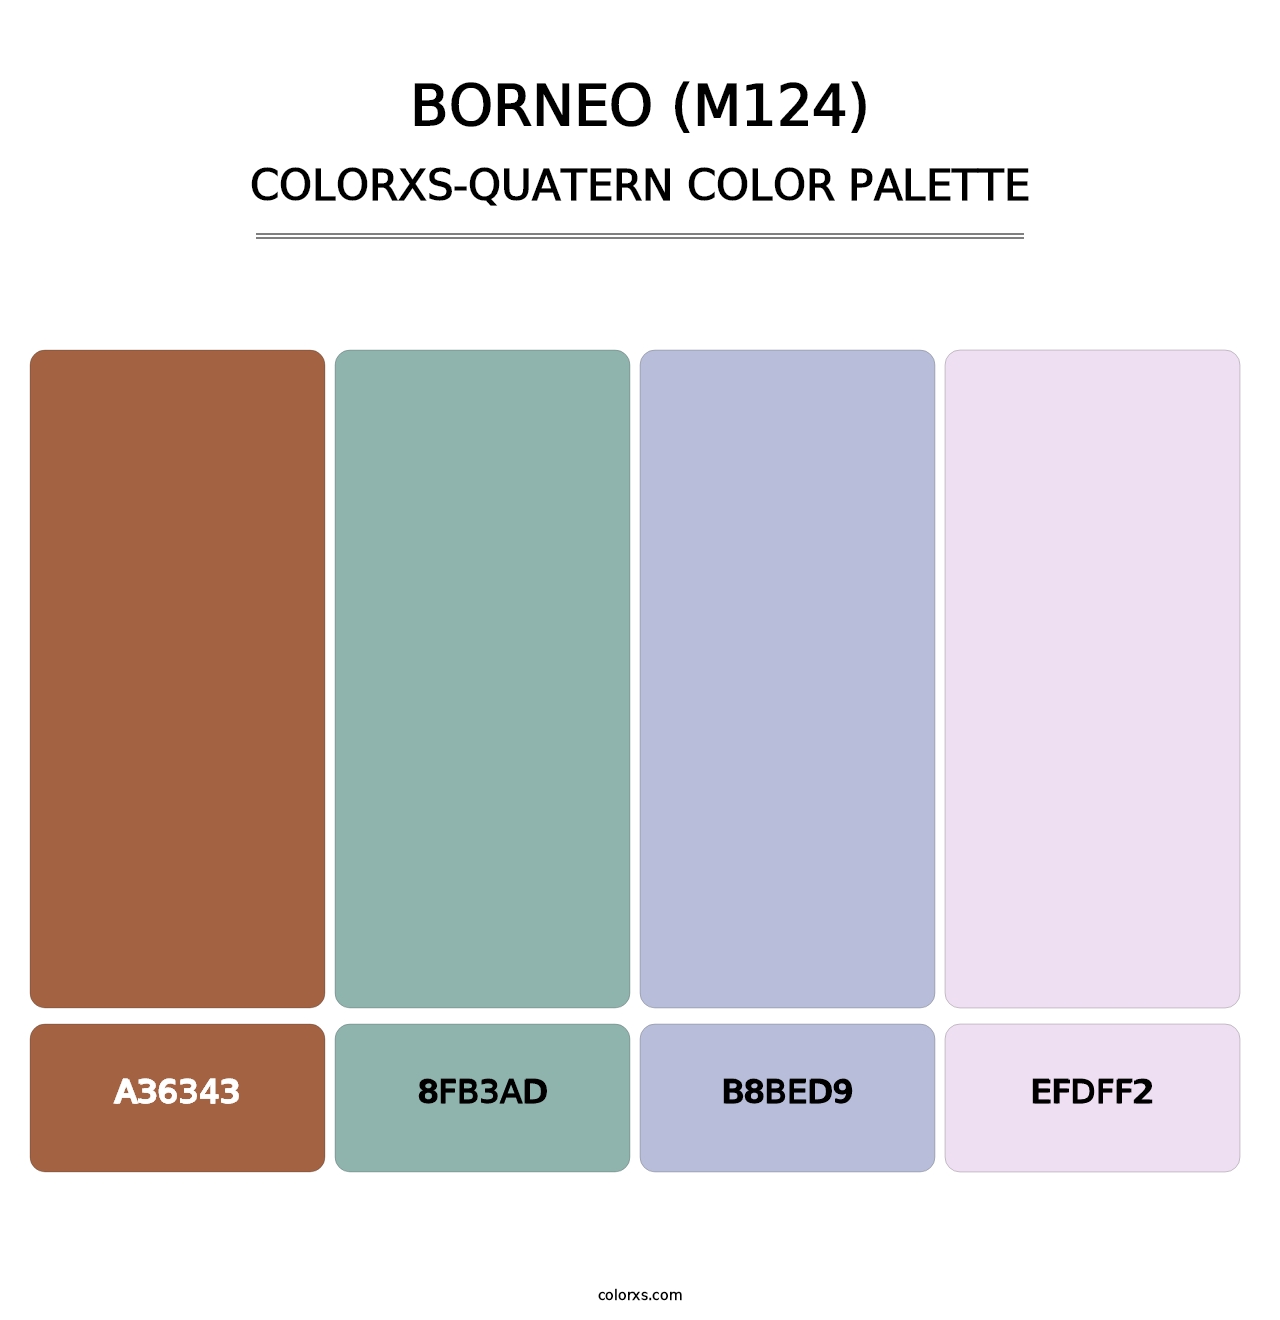 Borneo (M124) - Colorxs Quatern Palette